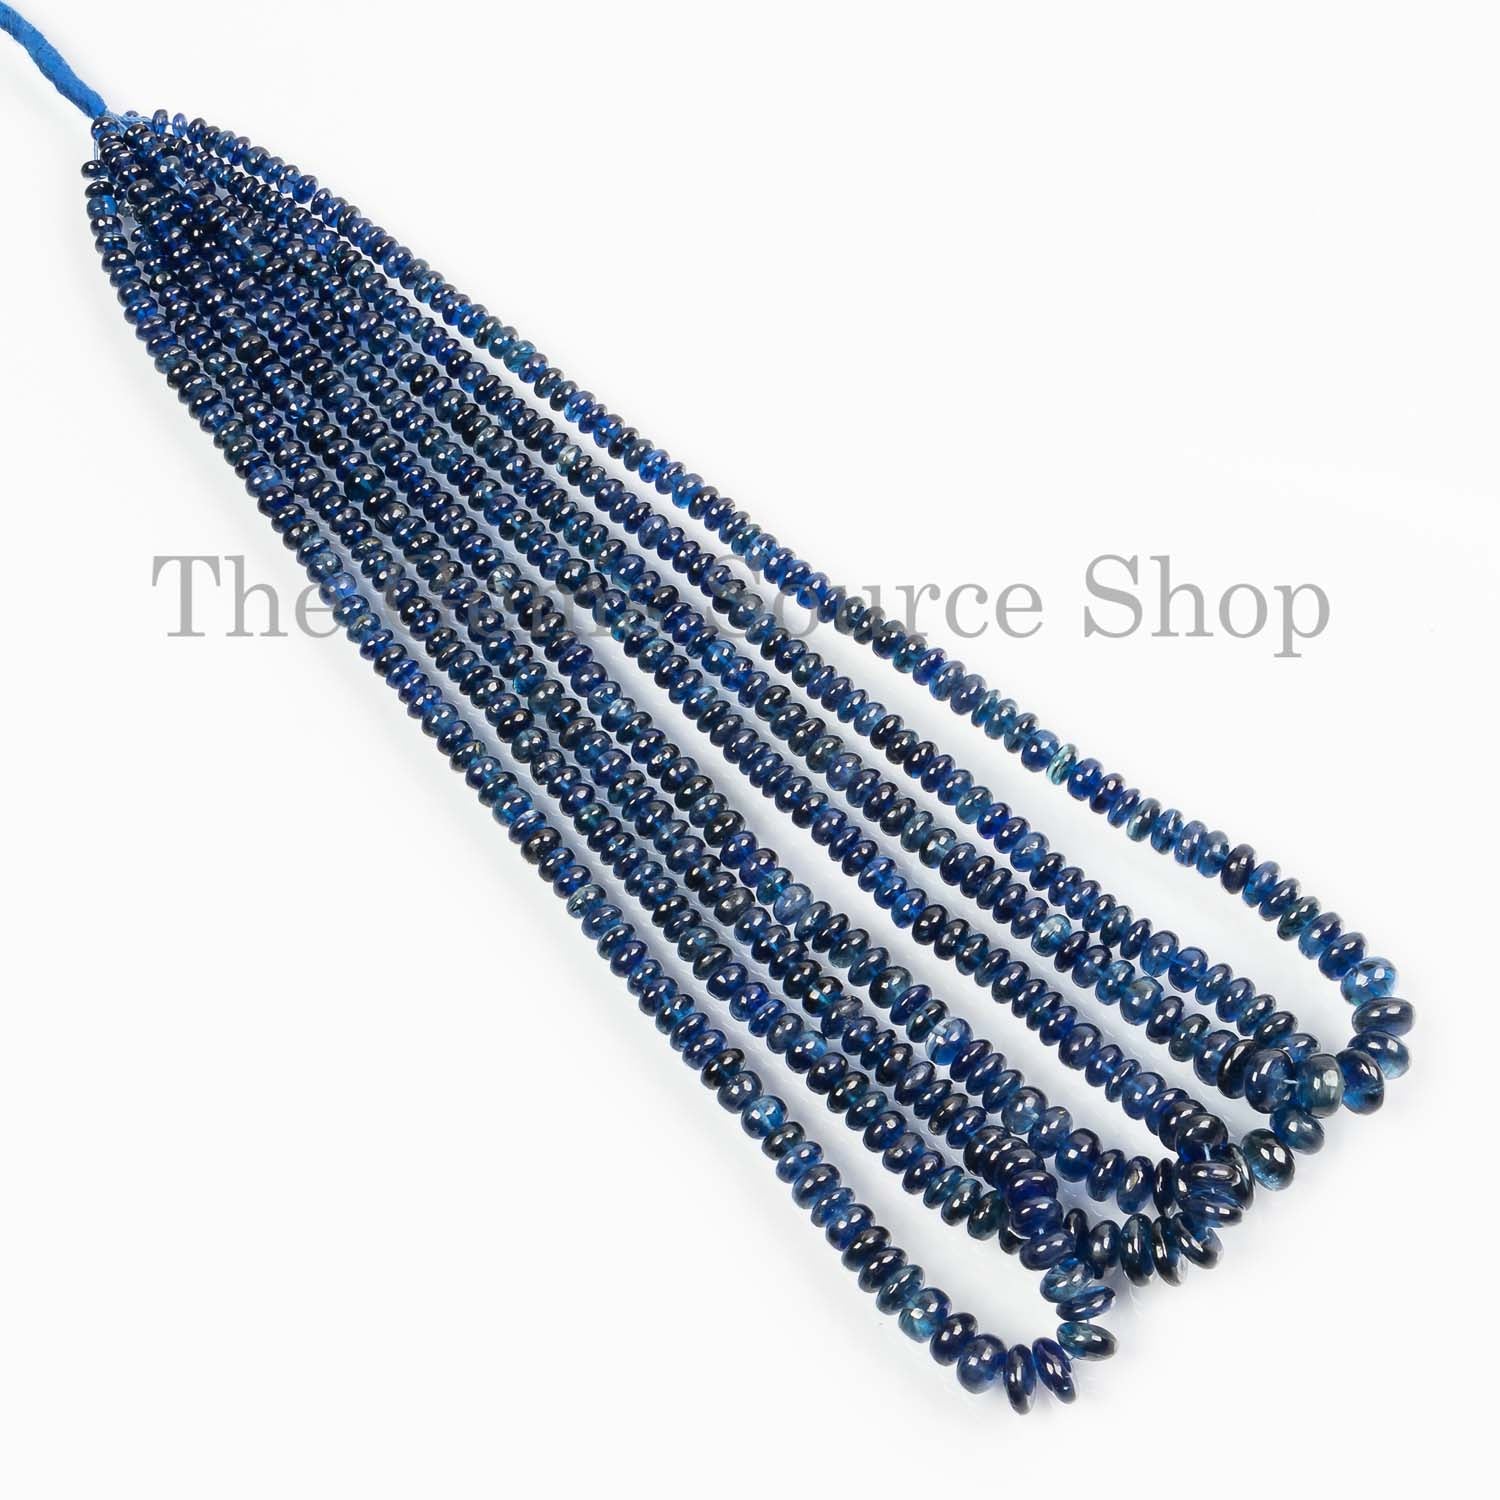 Kyanite Beads, Kyanite Rondelle Beads, Kyanite Smooth Beads, Kyanite Gemstone Beads